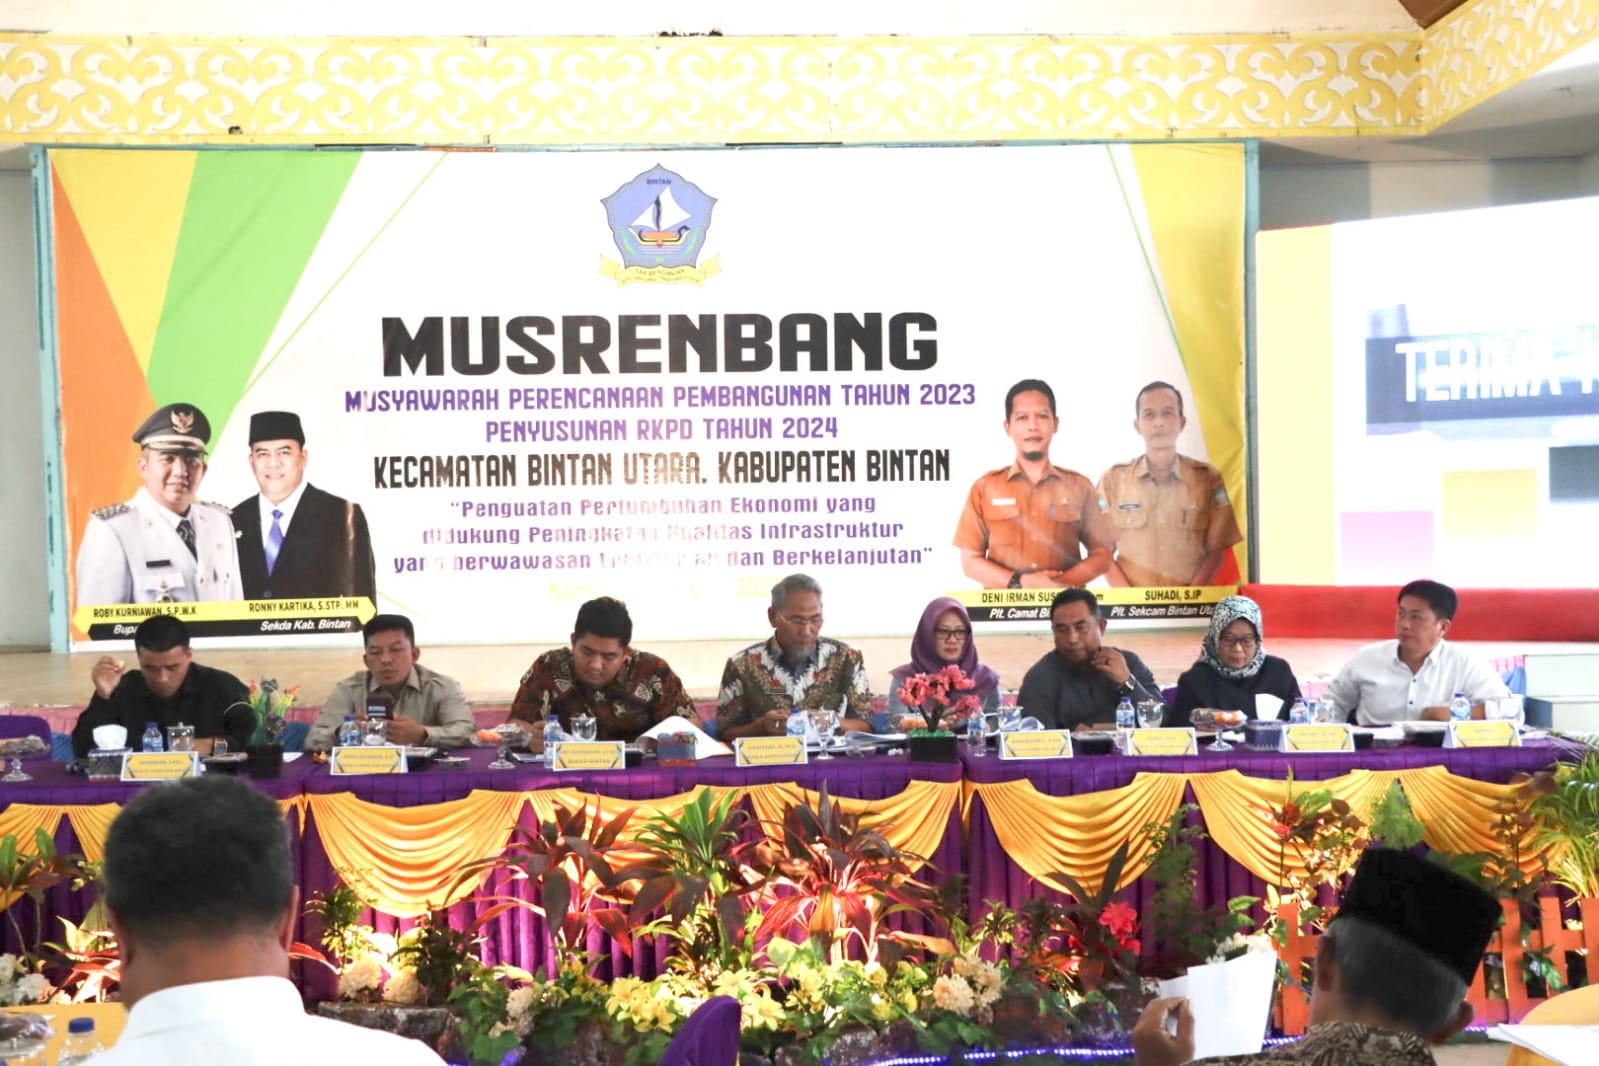 Bupati Roby Kurniawan Tinjau Pelaksanaan Musrenbang di Bintan Utara dan Lobam, Kamis (08/02/23)./f.dok.Istimewa.